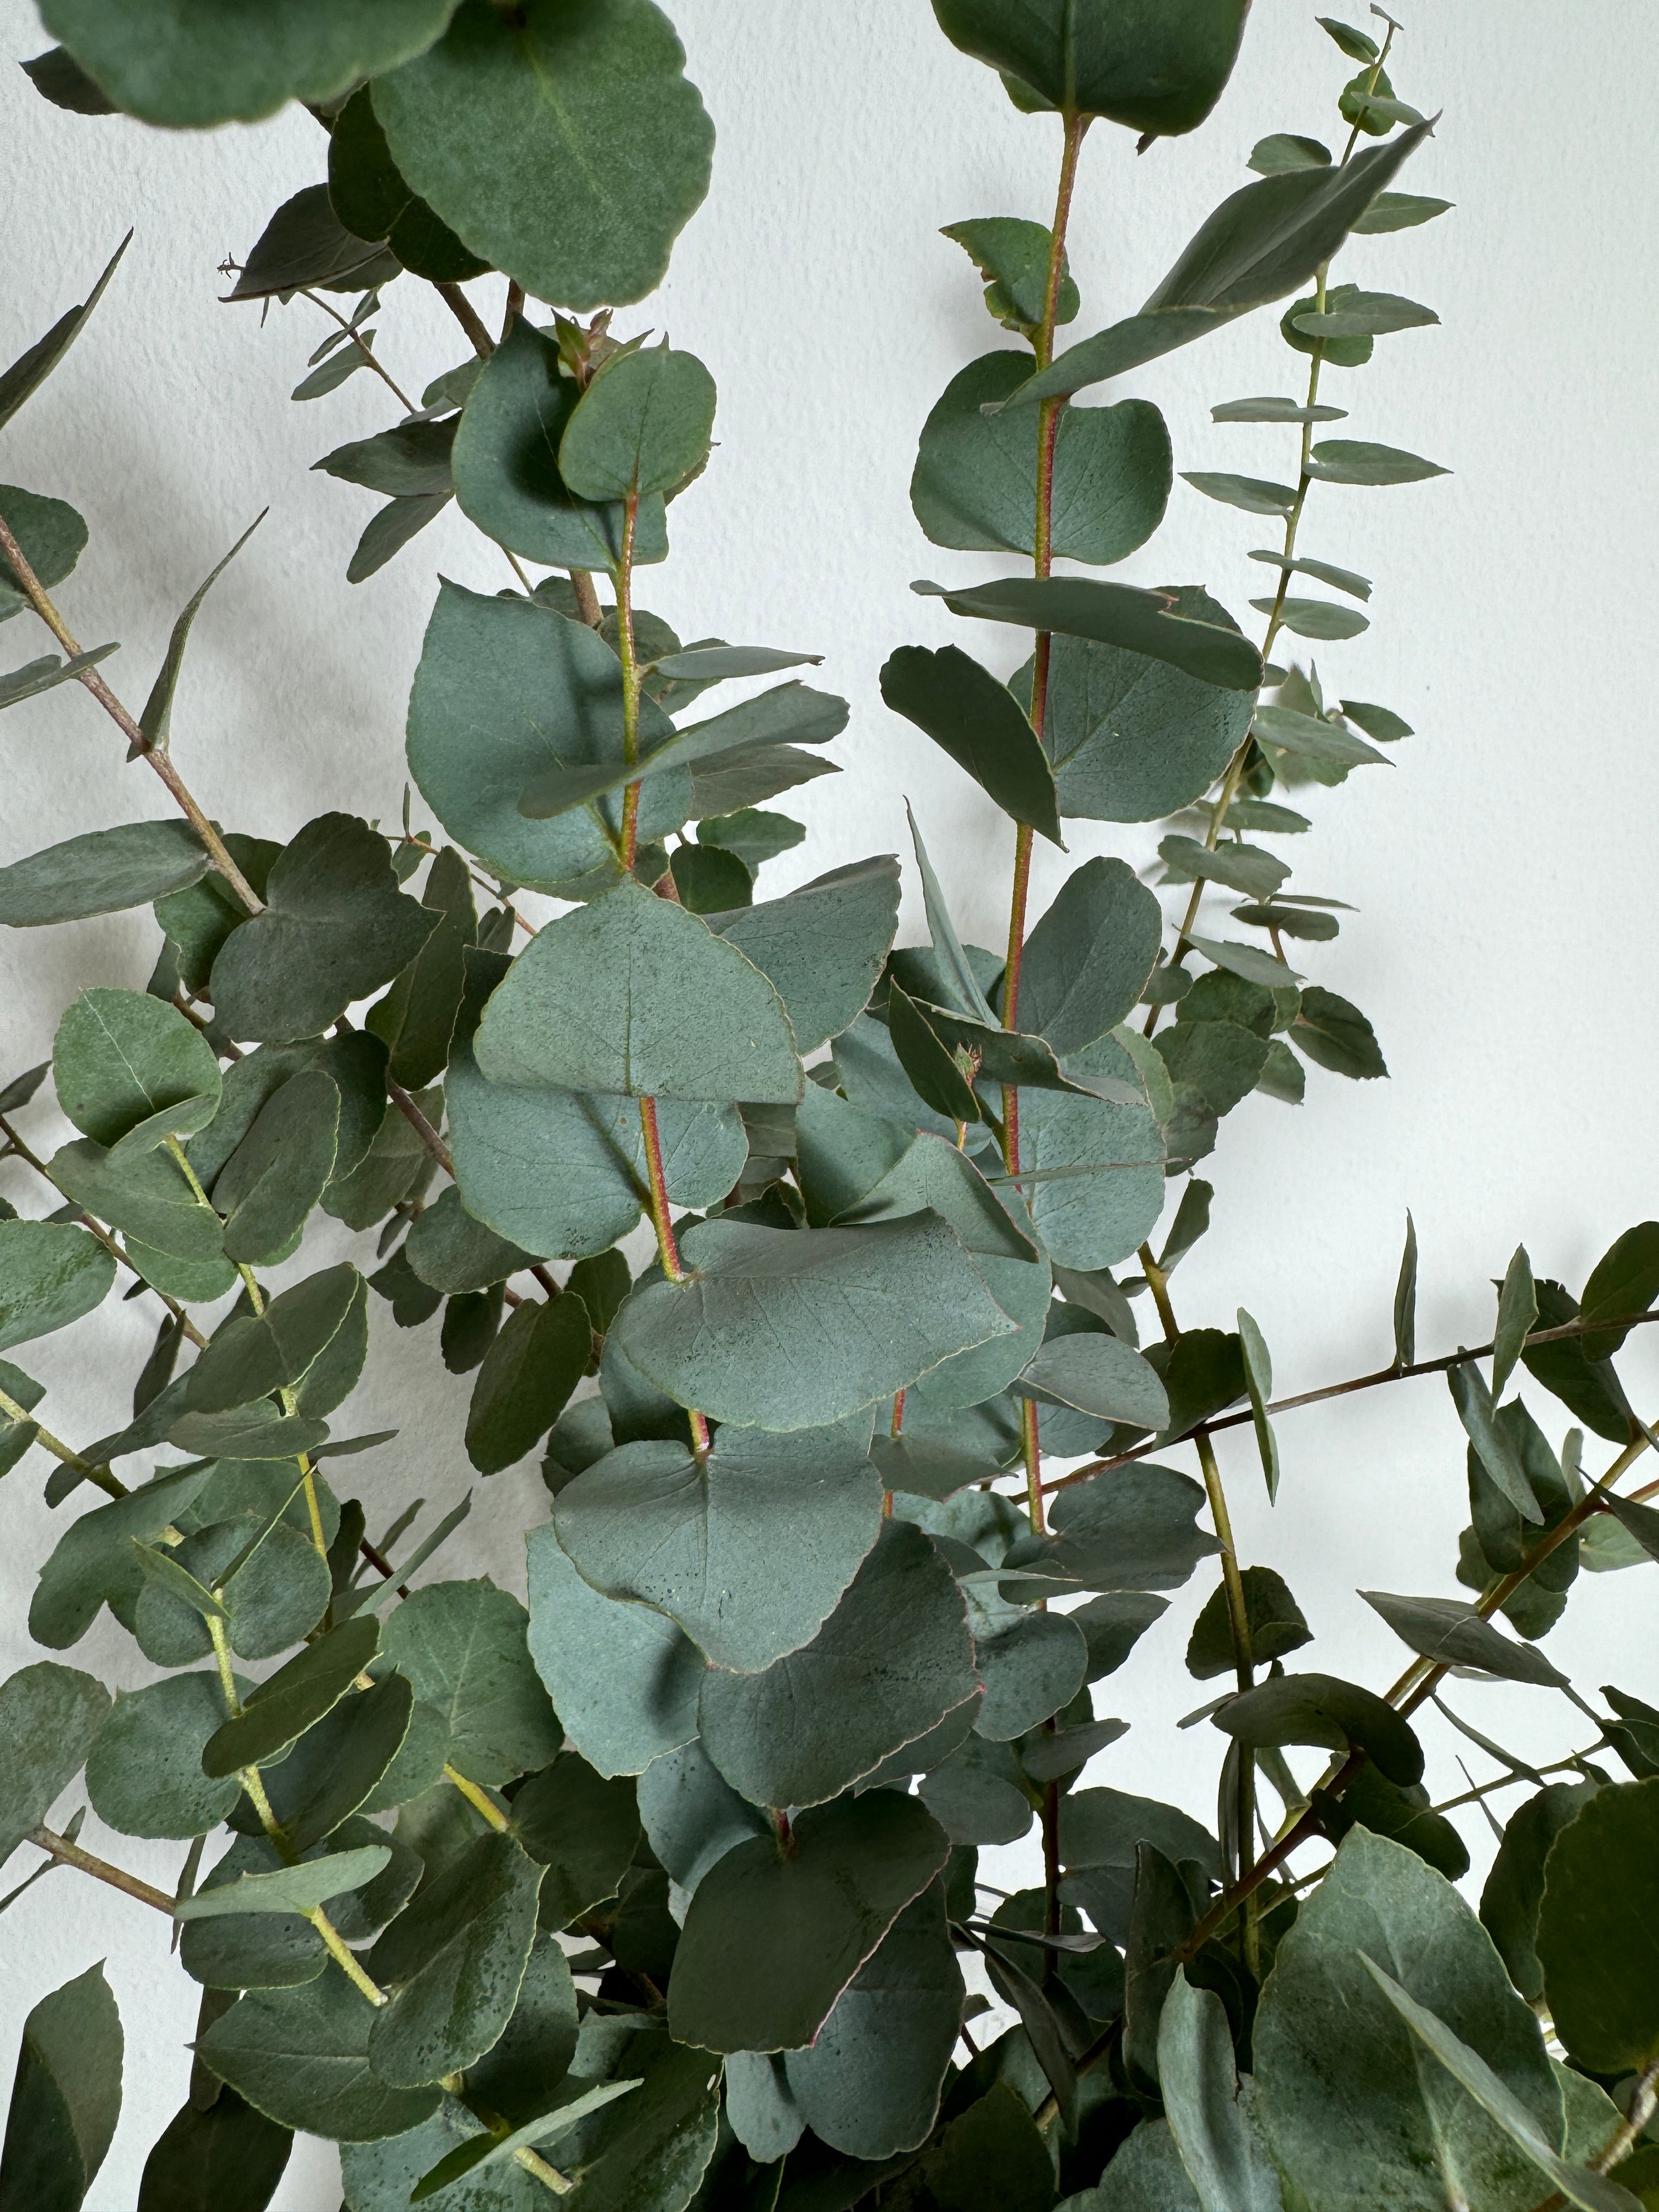 Eucalyptus Cinerea